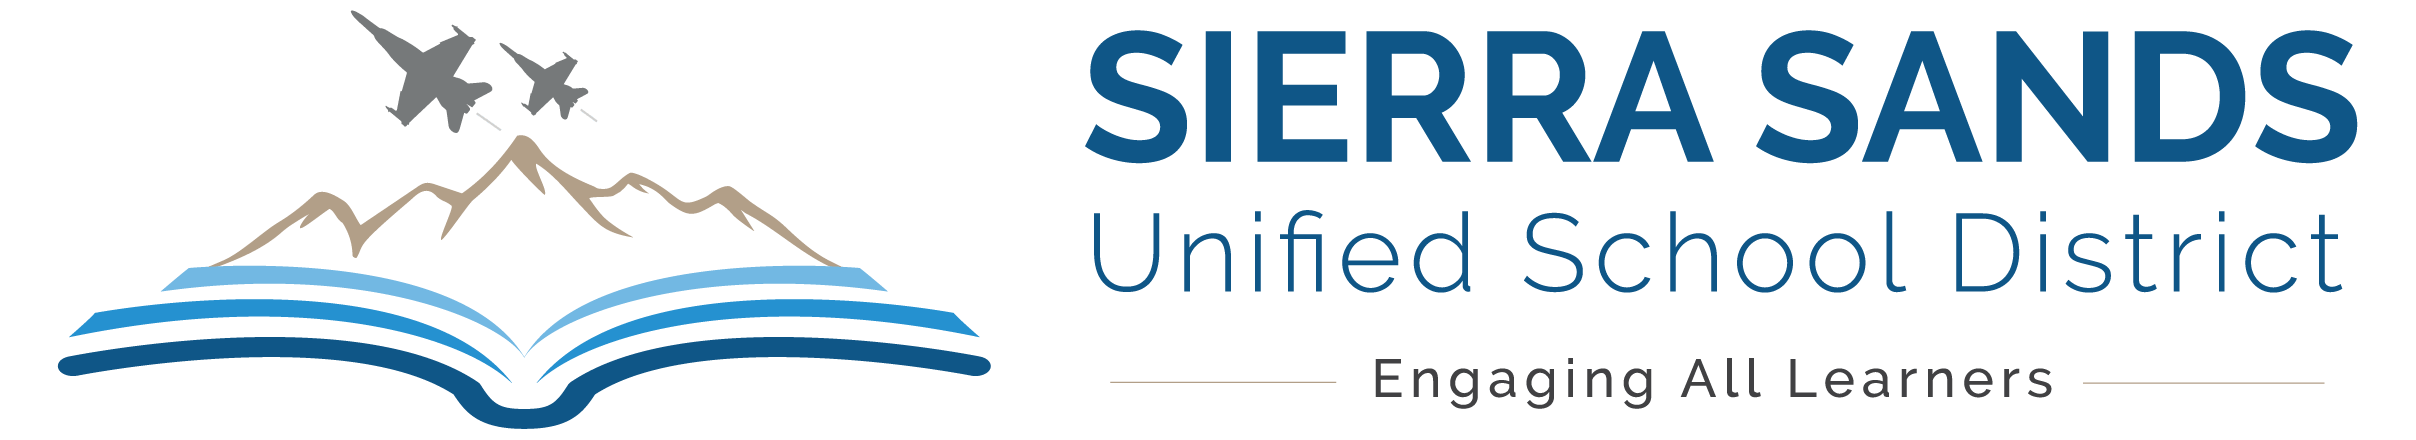 Sierra Sands District Logo